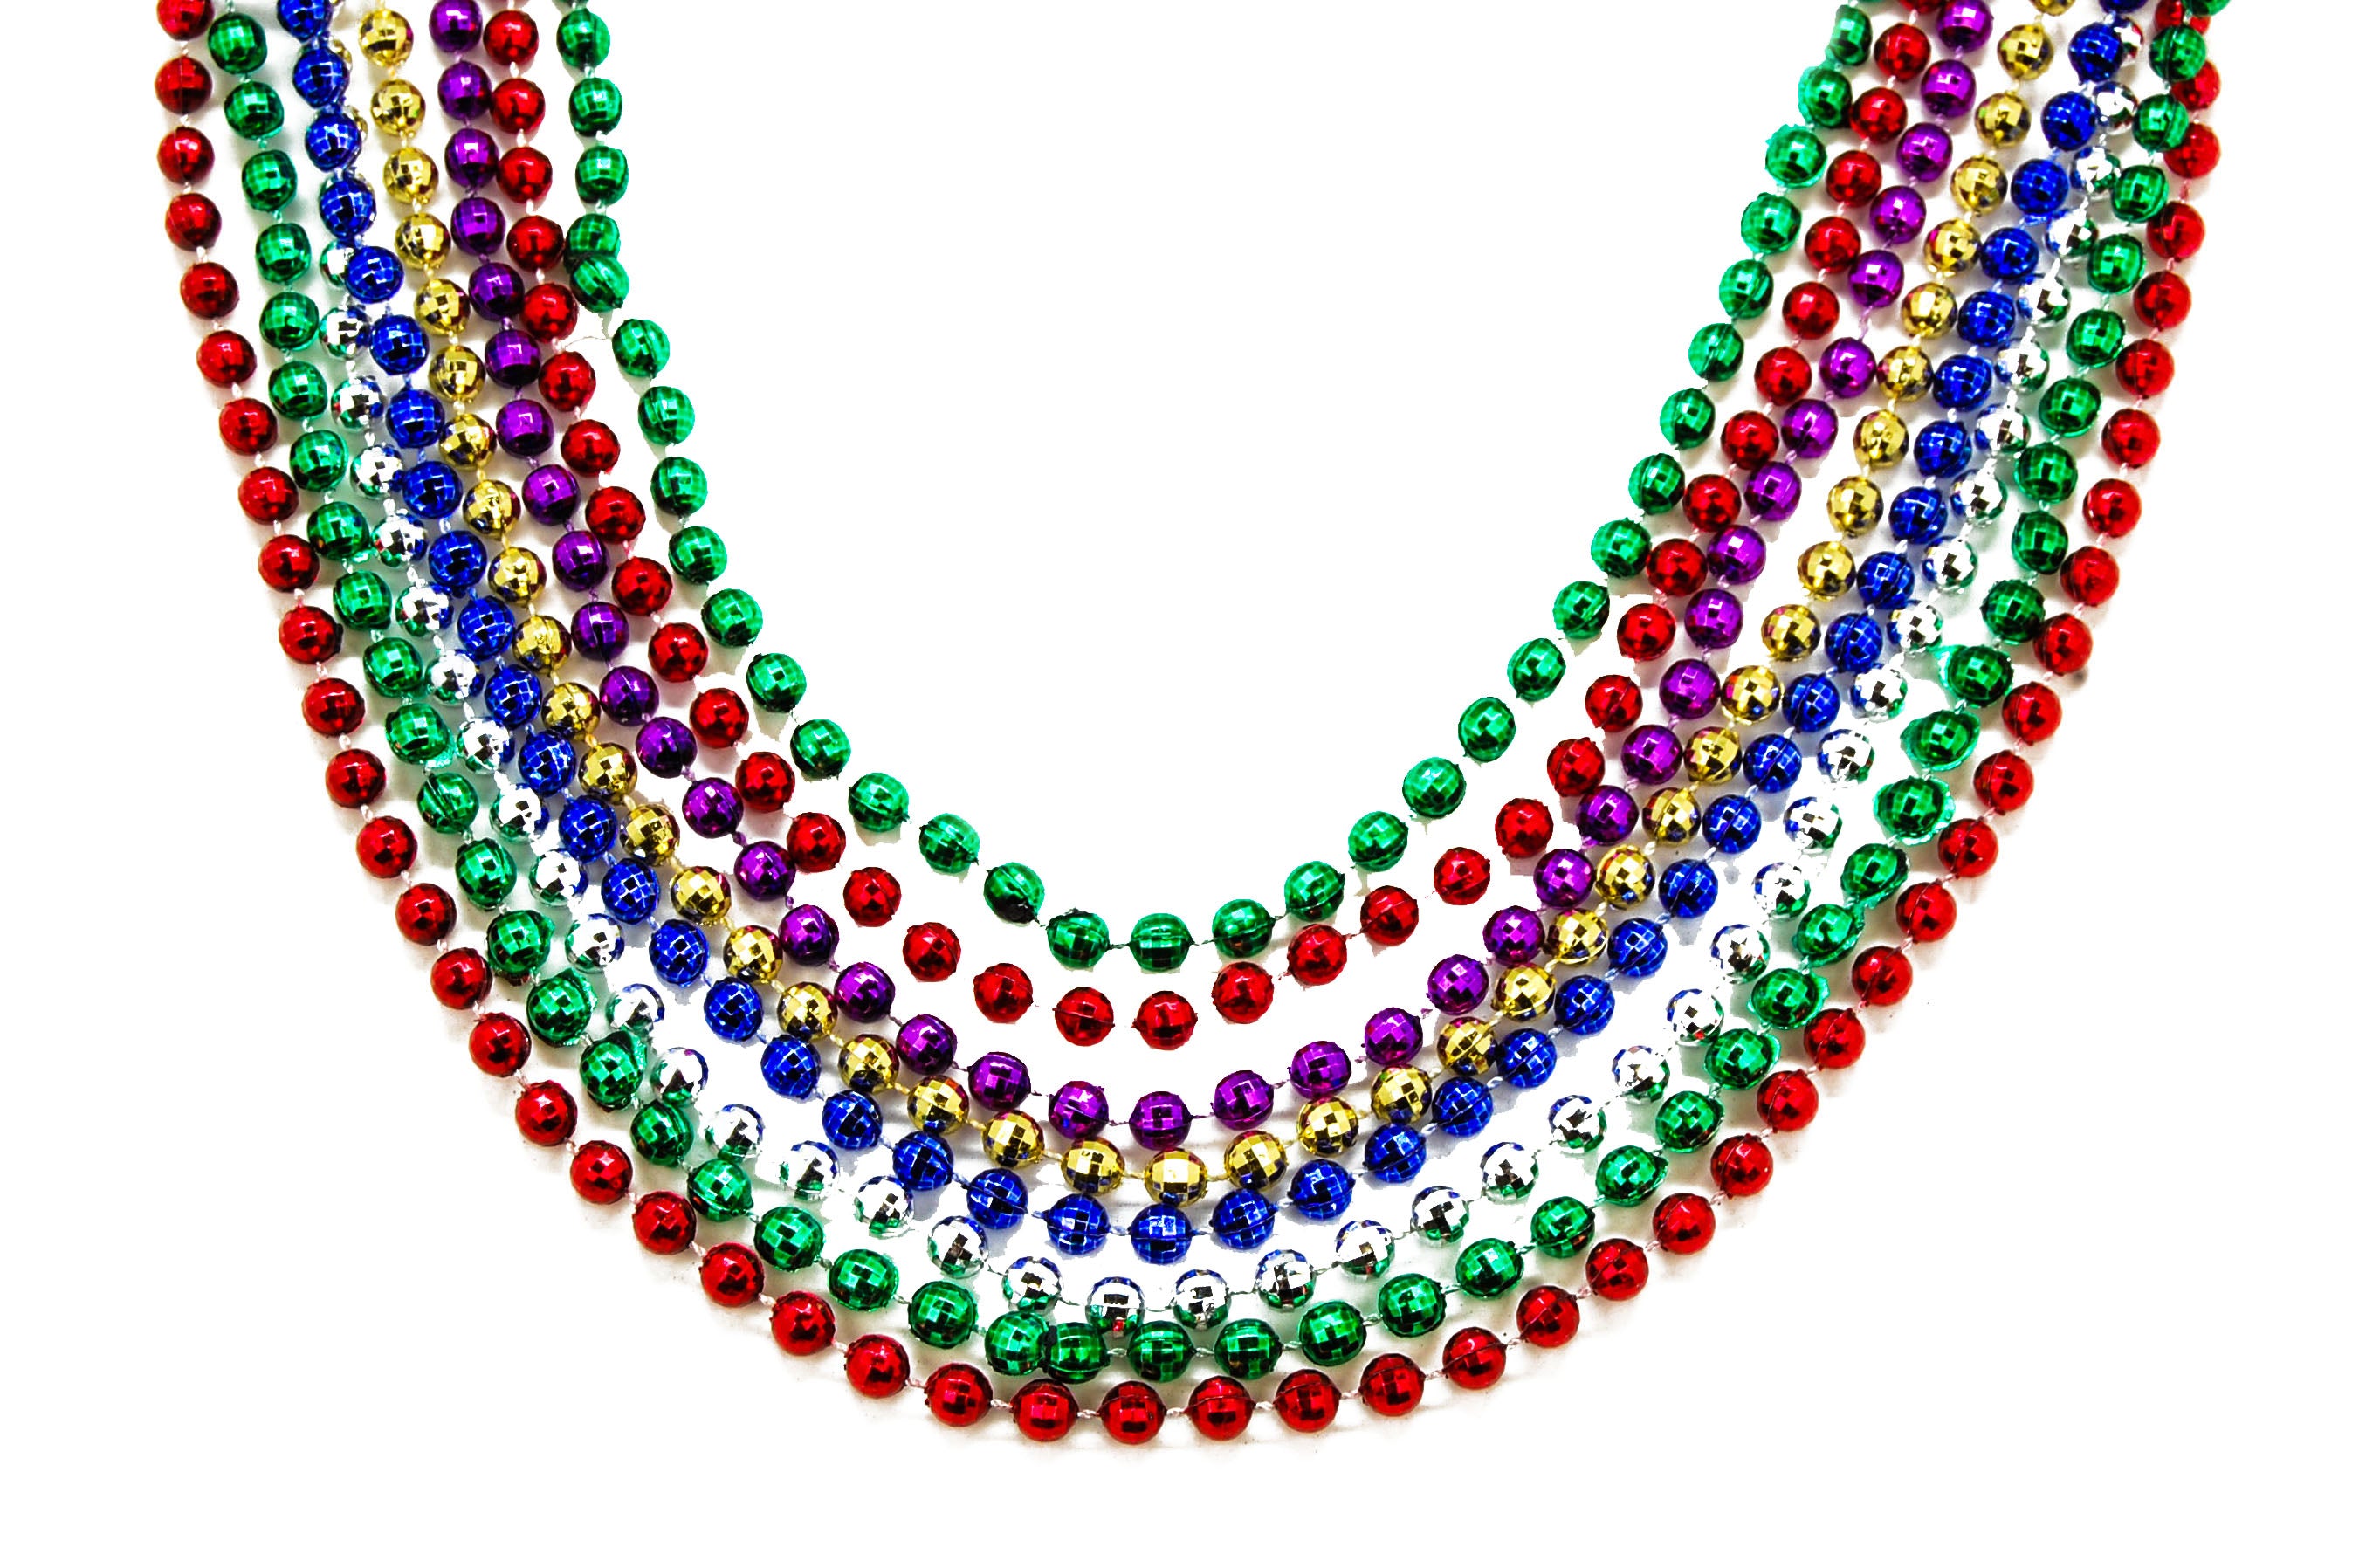 31 Hand-Strung Glass Mardi Gras Beads (12) [MG19-100